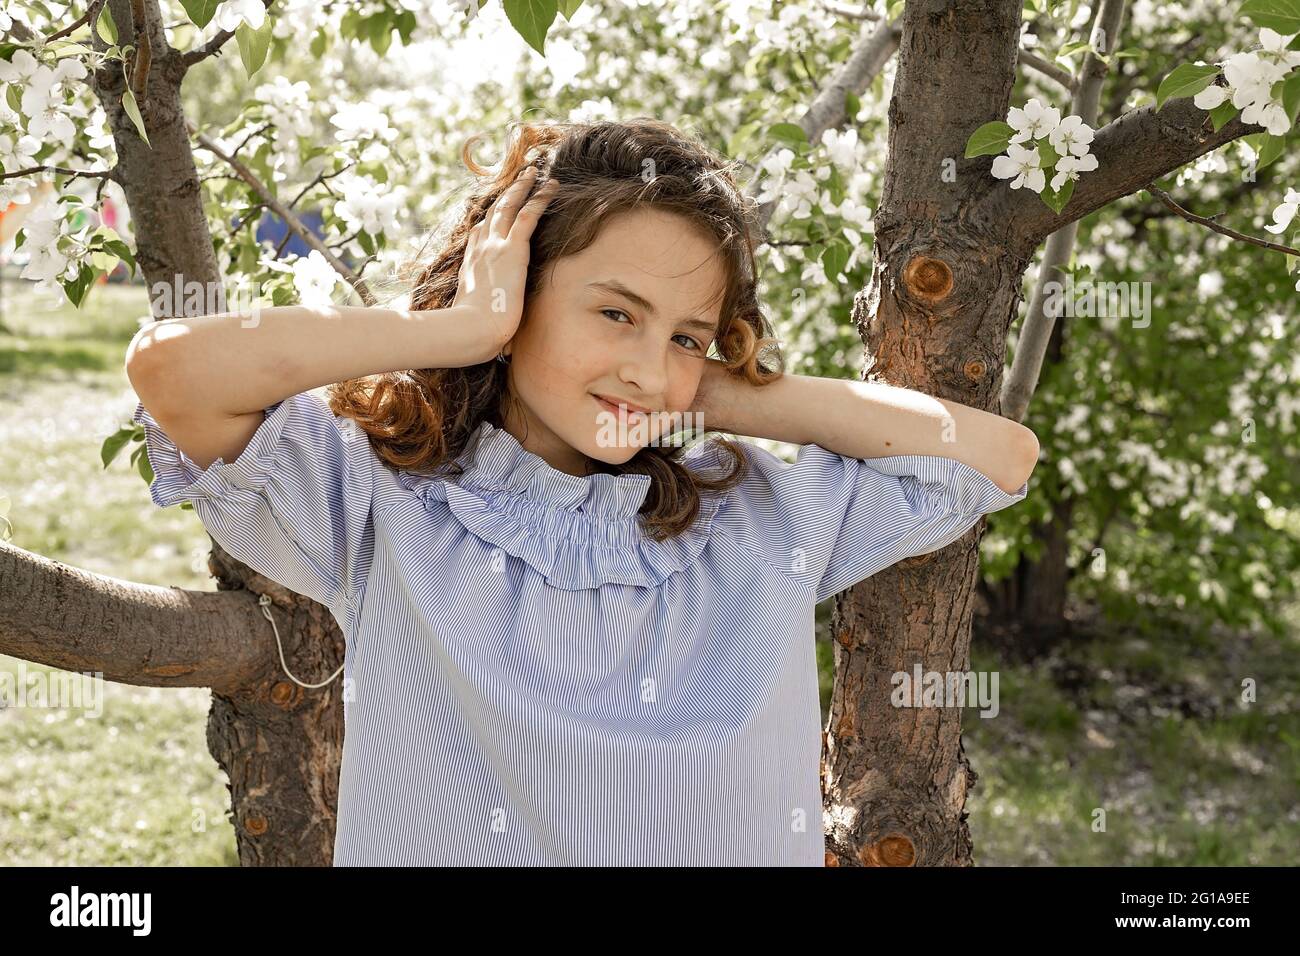 Photo de style de vie d'un enfant heureux. Jolie petite fille brune souriante dans un jardin fleuri. La jeune fille redresse ses cheveux qui flottent dans le vent et les toilettes Banque D'Images